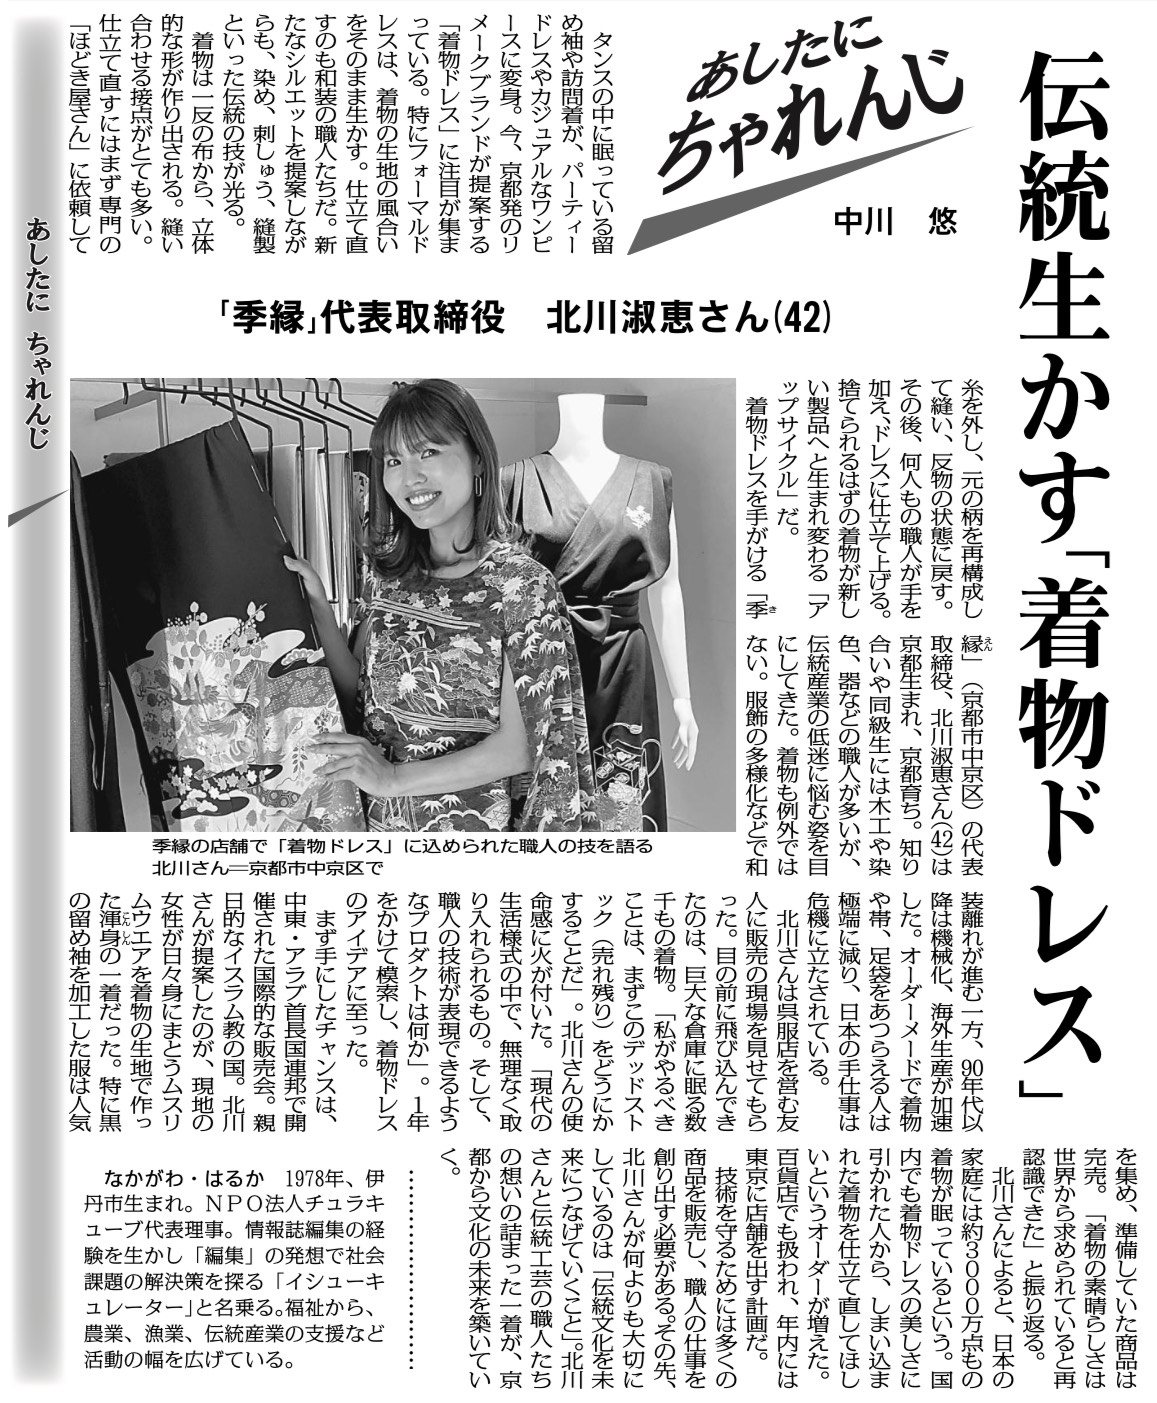 毎日新聞「あしたに、たゃれんじ」北川淑恵さん